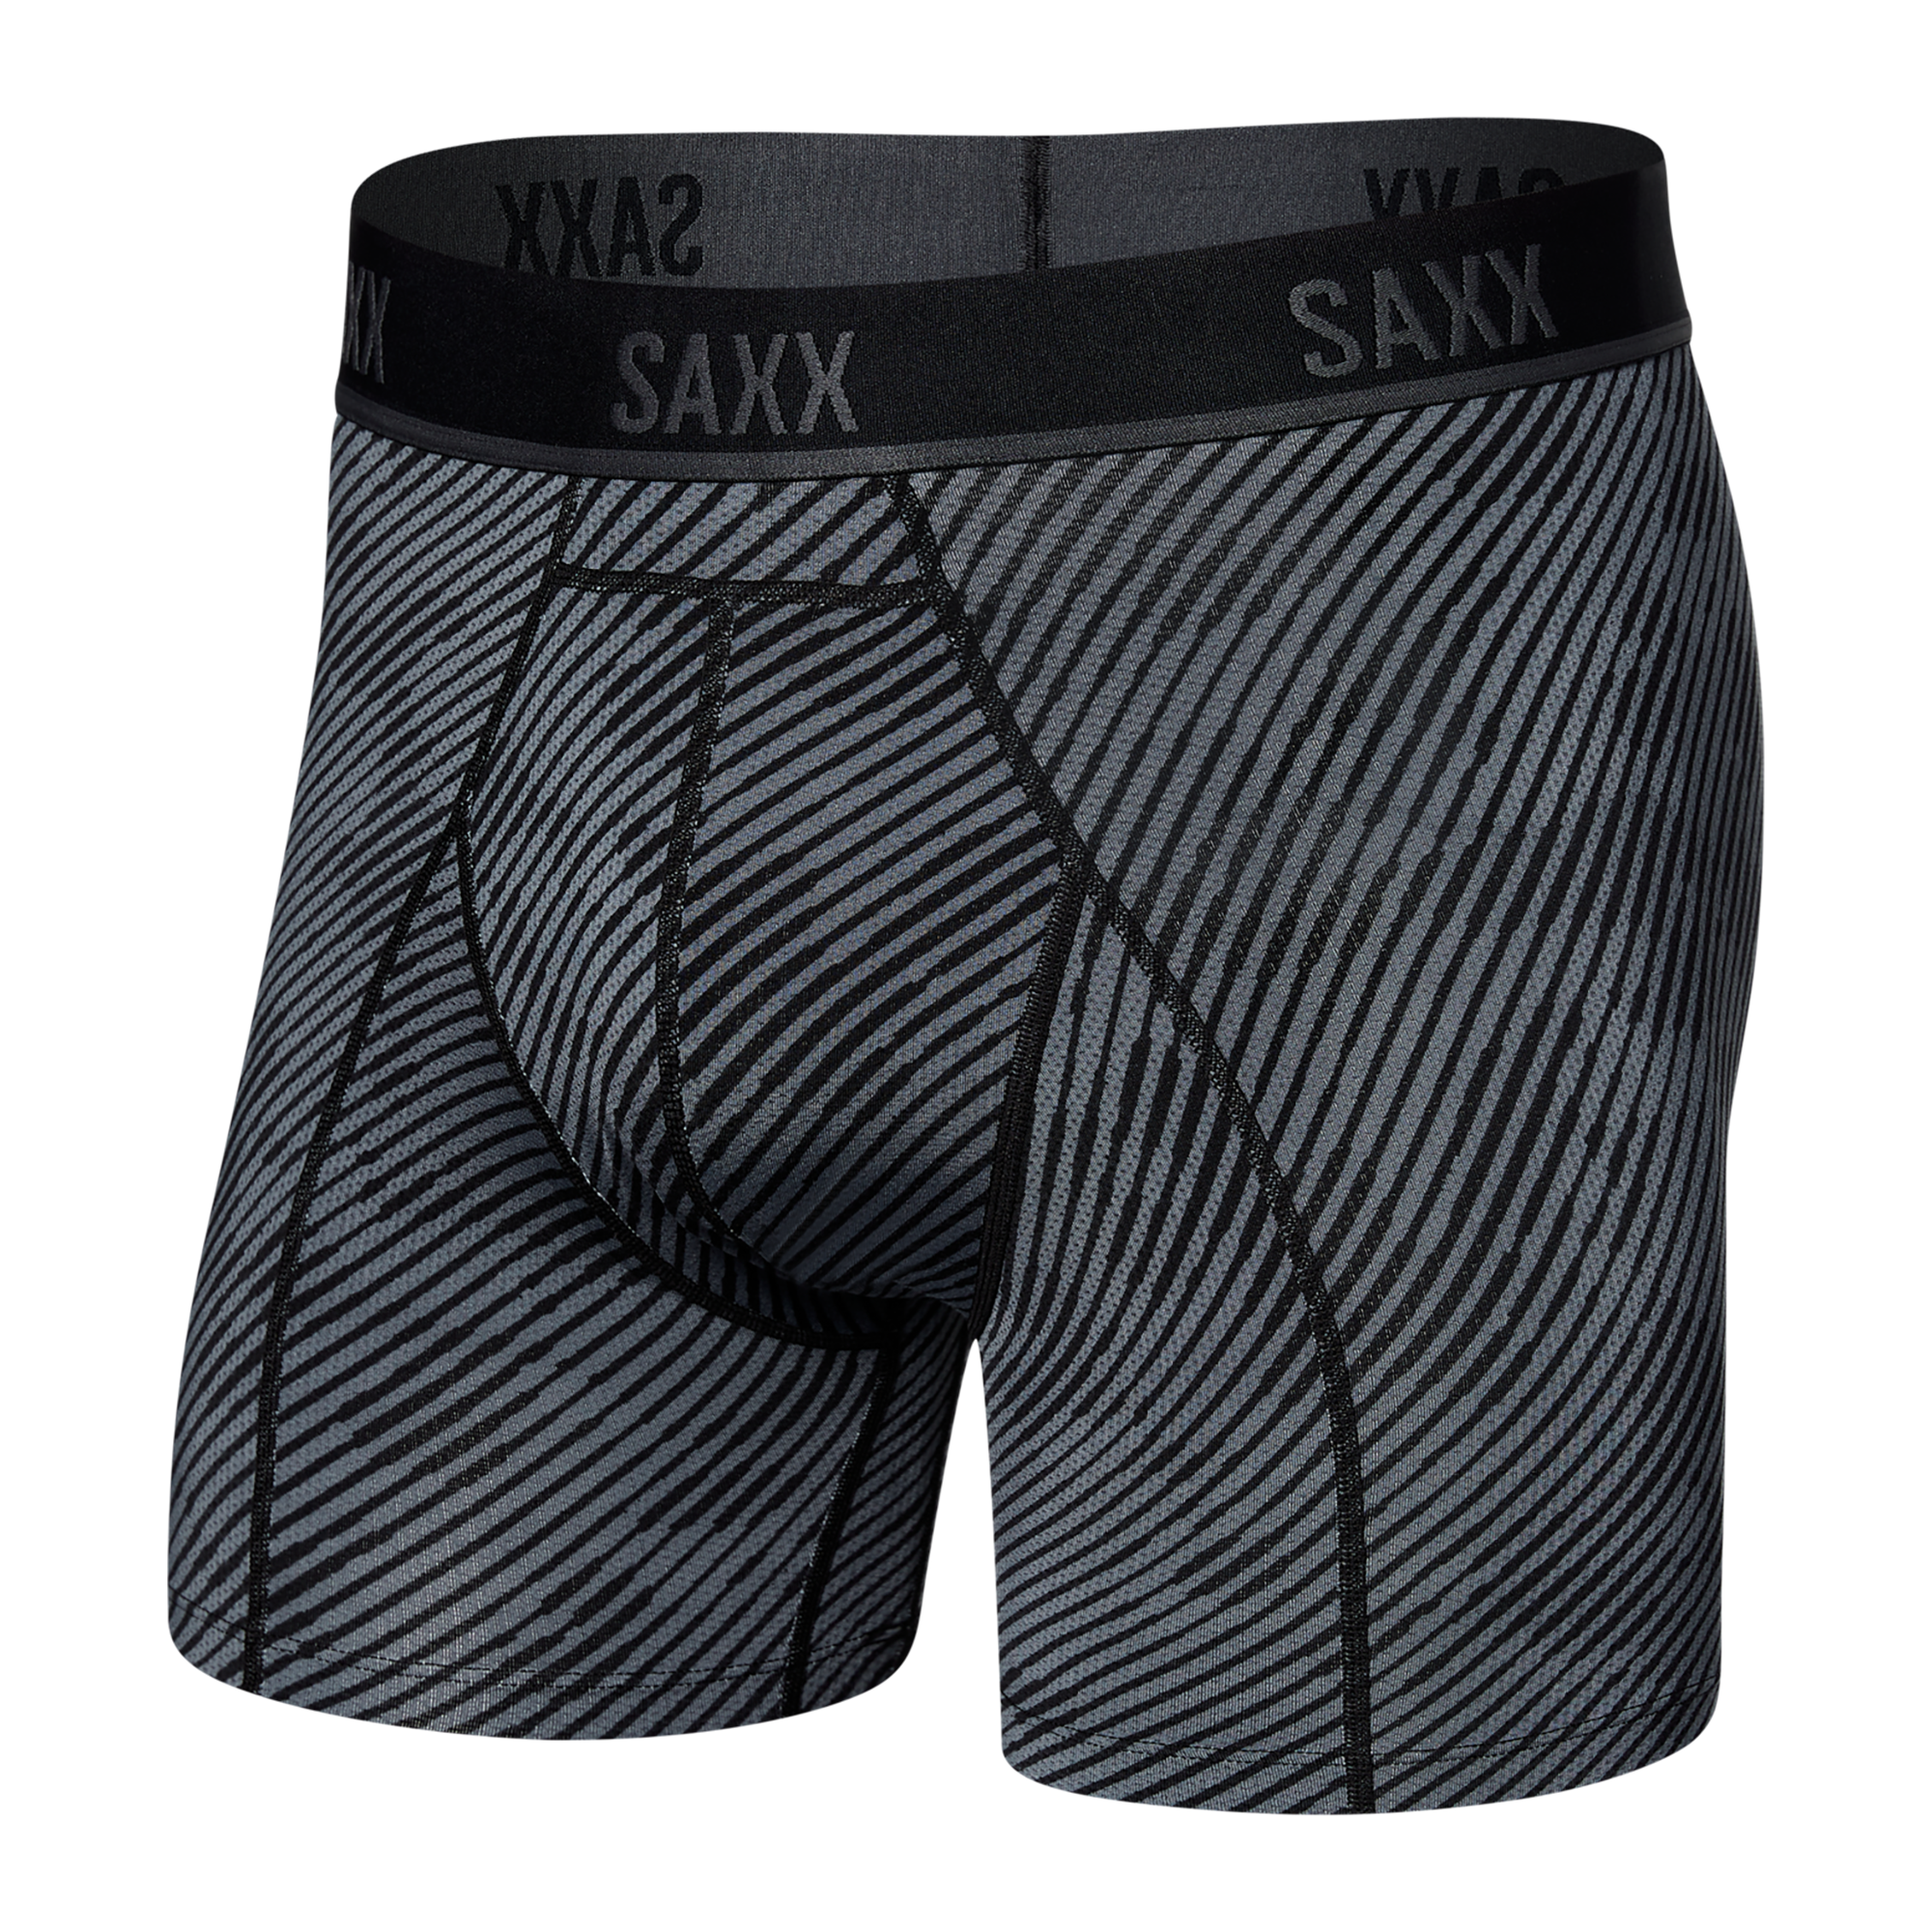  VIBE SUPER SOFT BOXER BRIEF, supersize camo-black - boxers  - SAXX - 25.86 € - outdoorové oblečení a vybavení shop